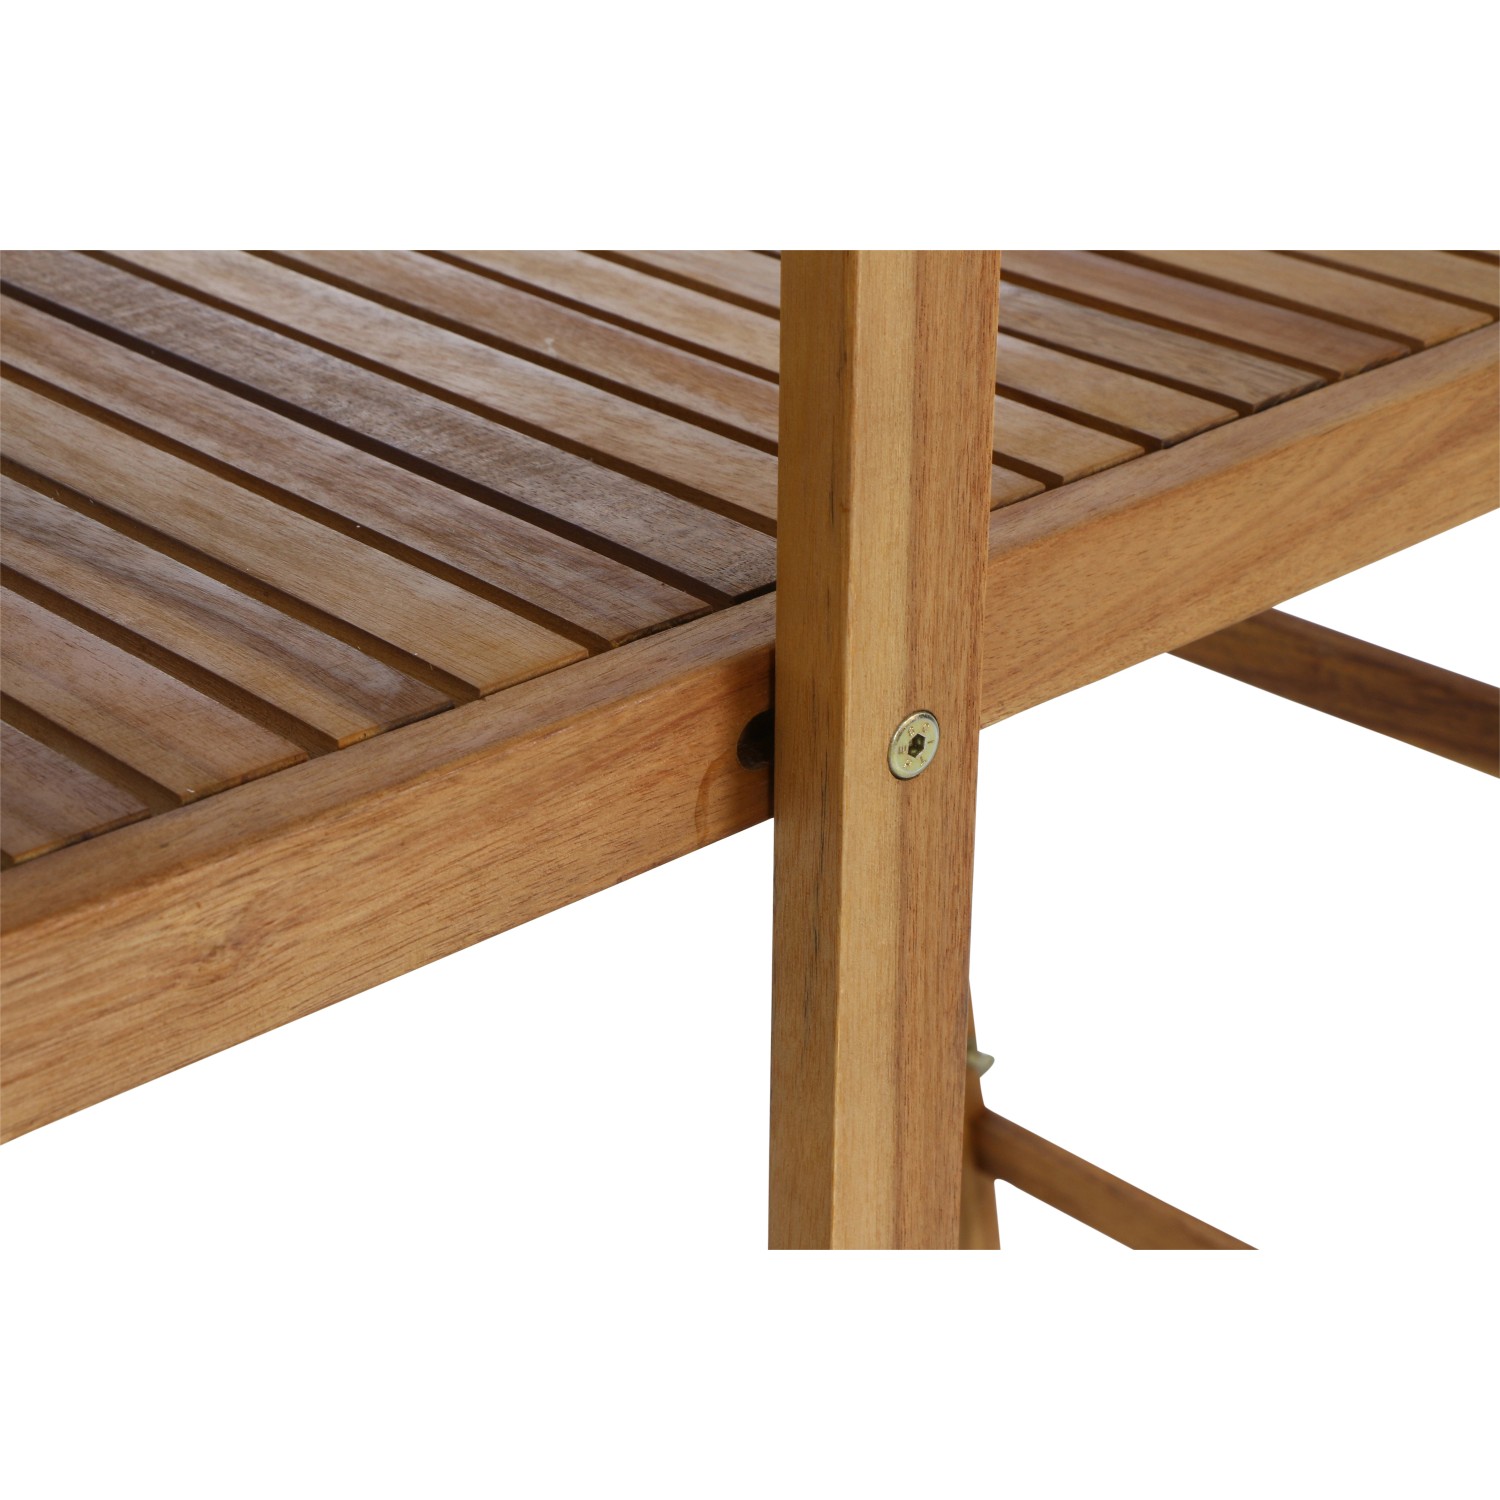 Siena Garden Balkonmöbel-Set Bari Akazie Natur 3-tlg. FSC® kaufen bei OBI